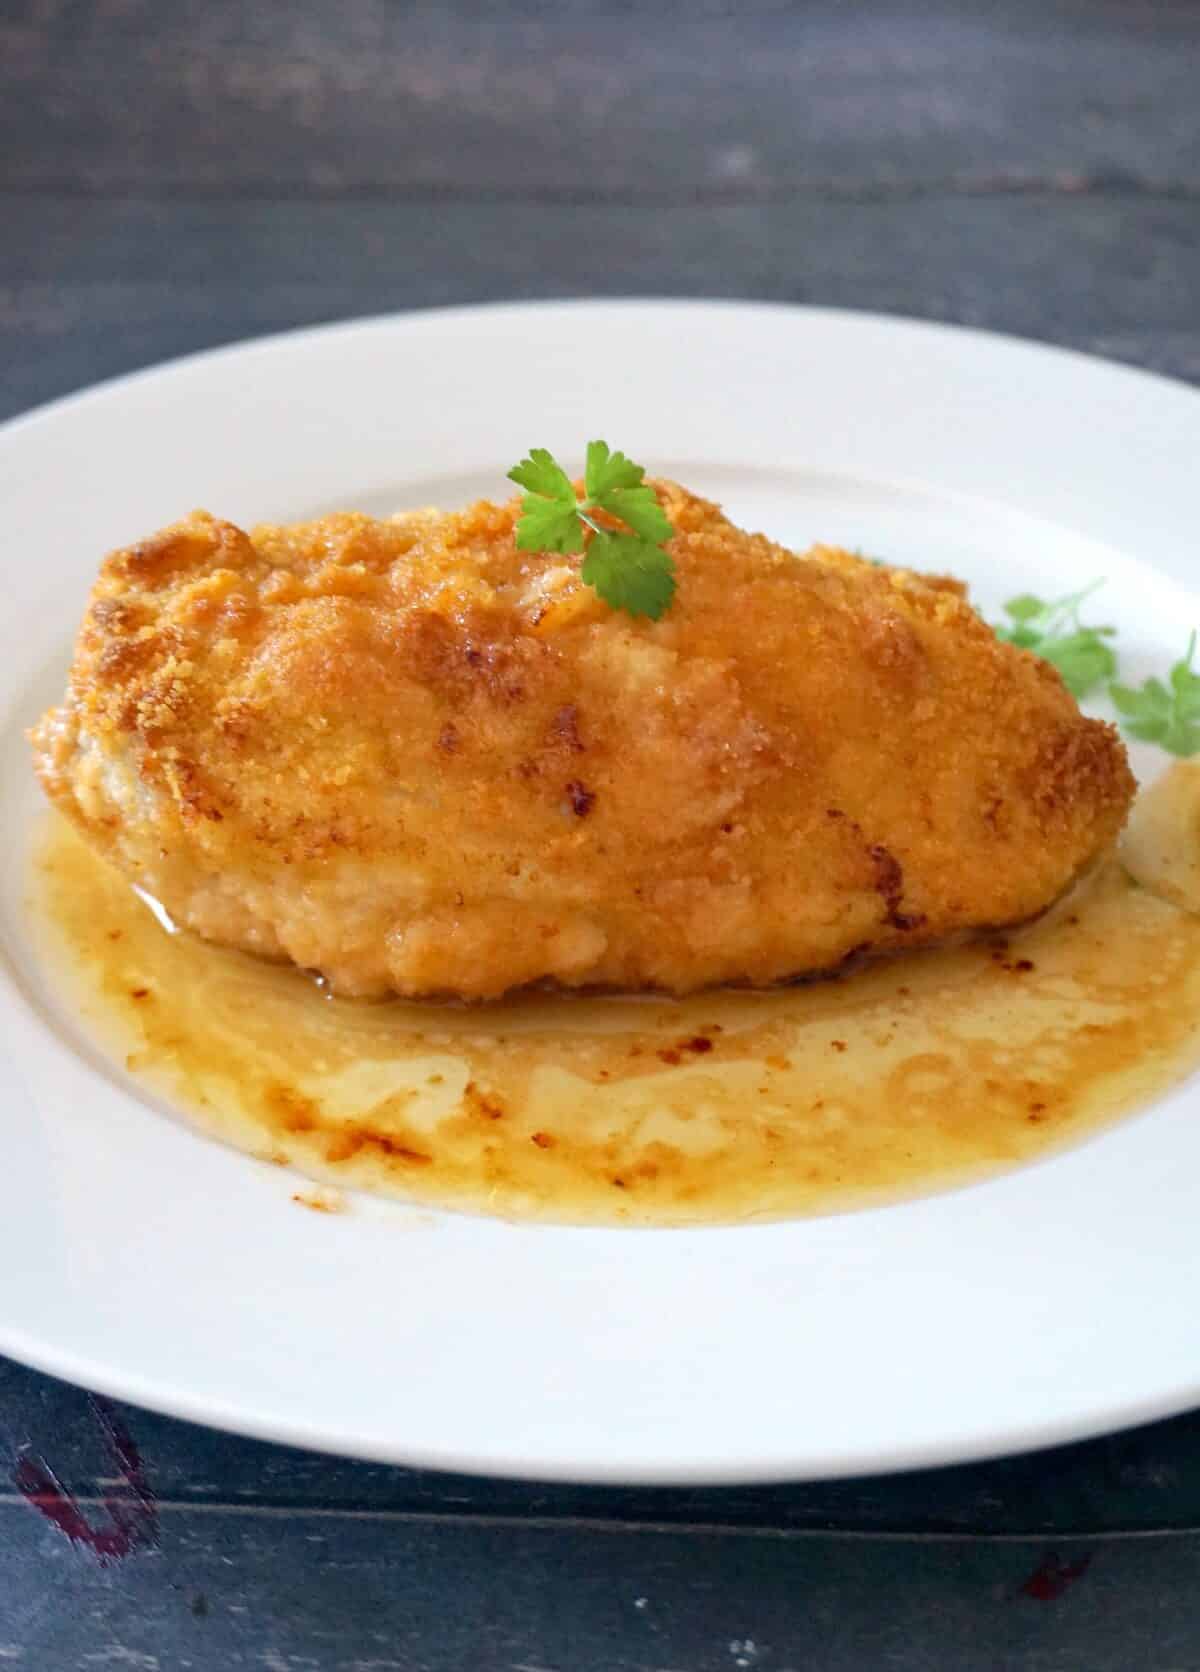 A chicken kiev on a white plate.